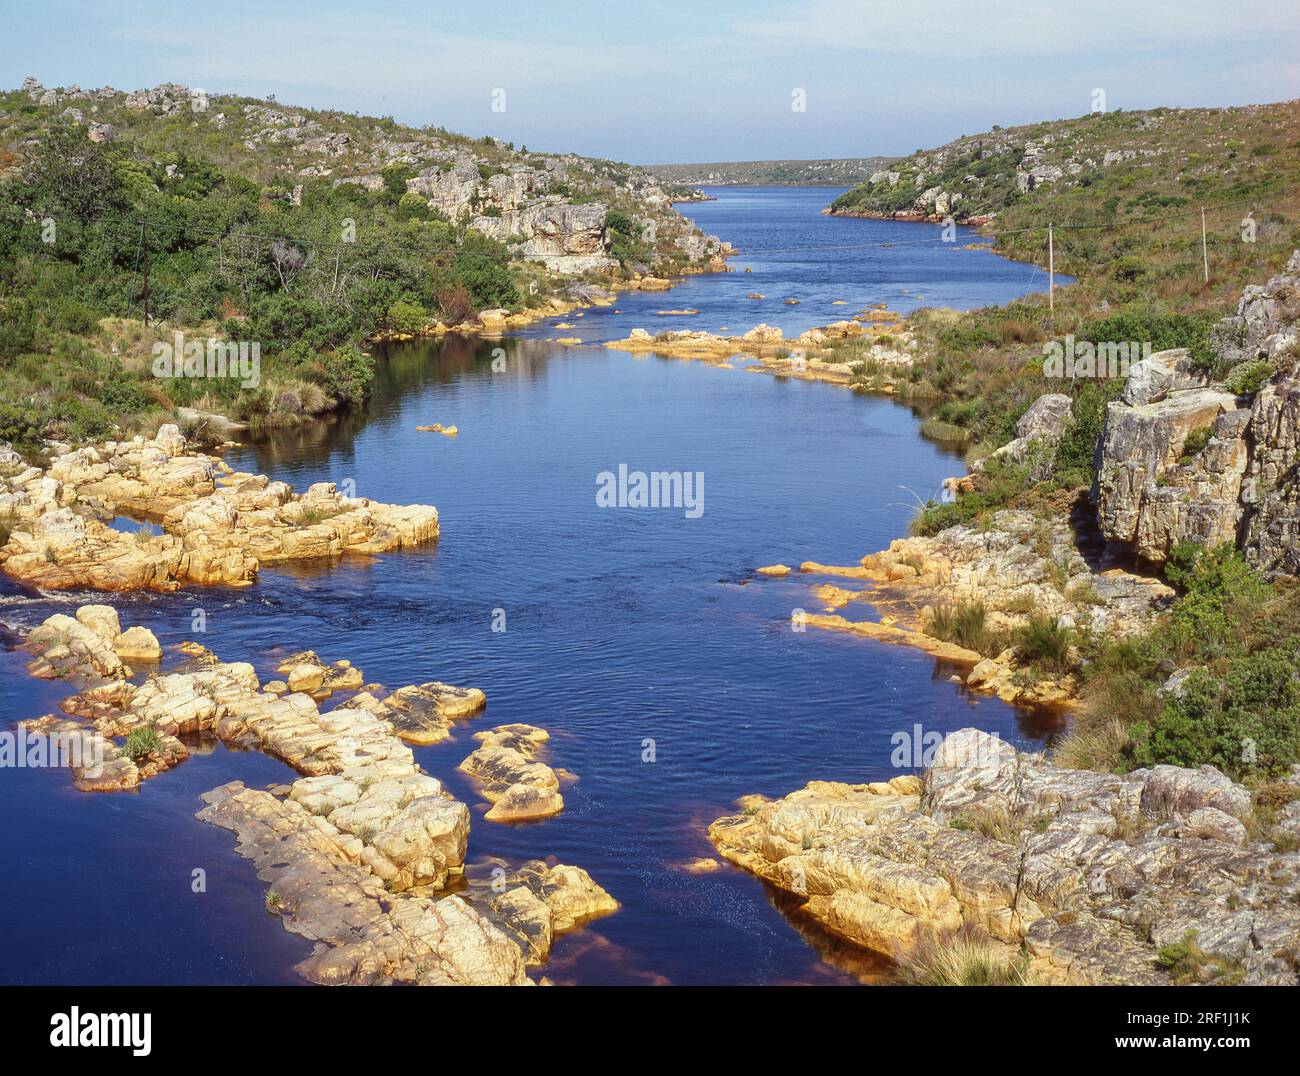 La rivière Palmiet est une rivière située dans la province du Cap occidental en Afrique du Sud. Banque D'Images